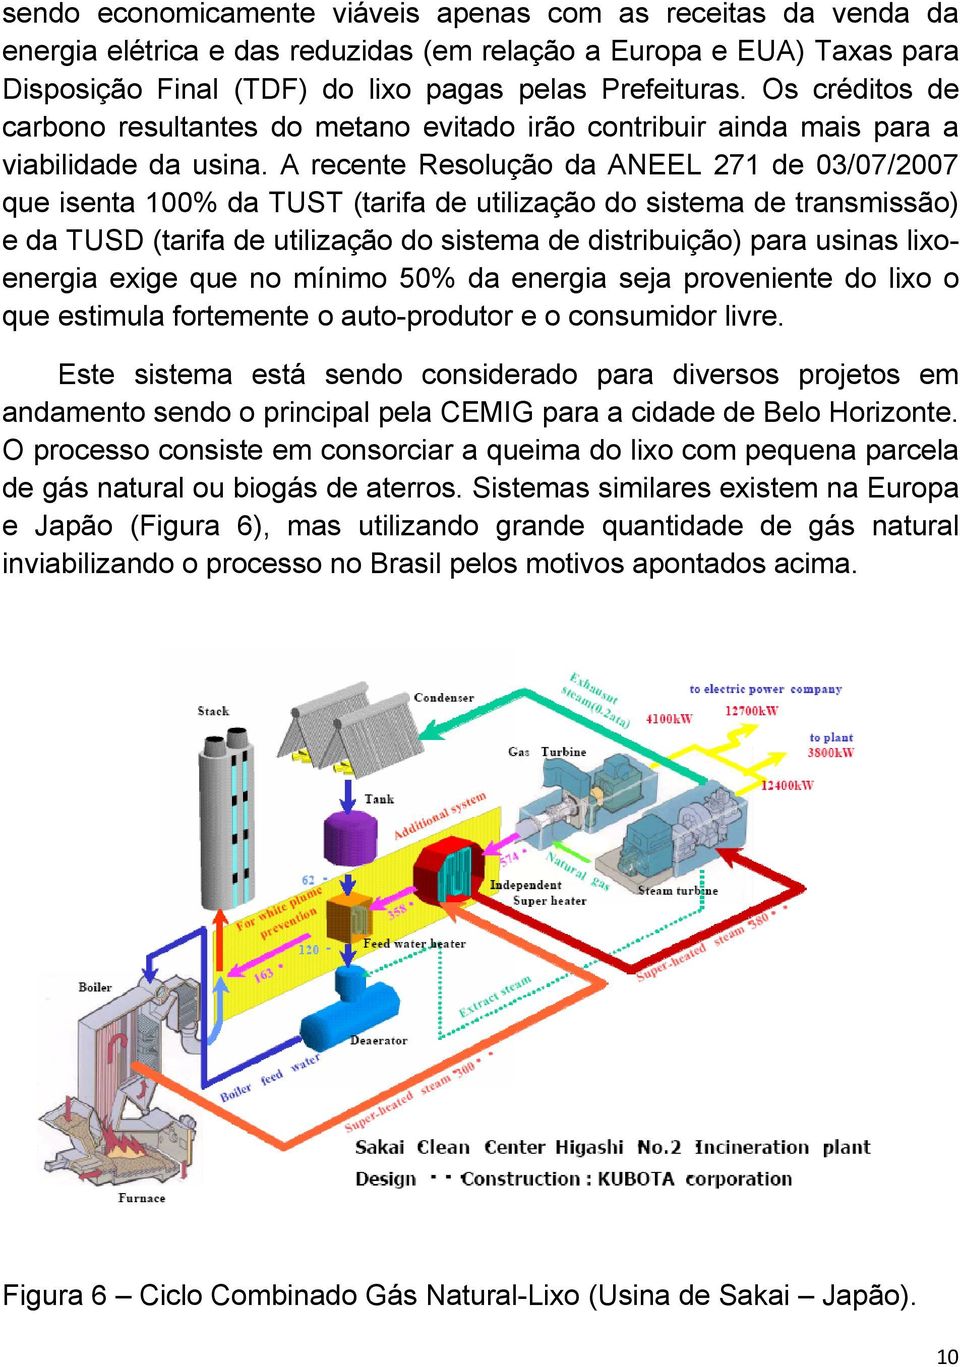 A recente Resolução da ANEEL 271 de 03/07/2007 que isenta 100% da TUST (tarifa de utilização do sistema de transmissão) e da TUSD (tarifa de utilização do sistema de distribuição) para usinas